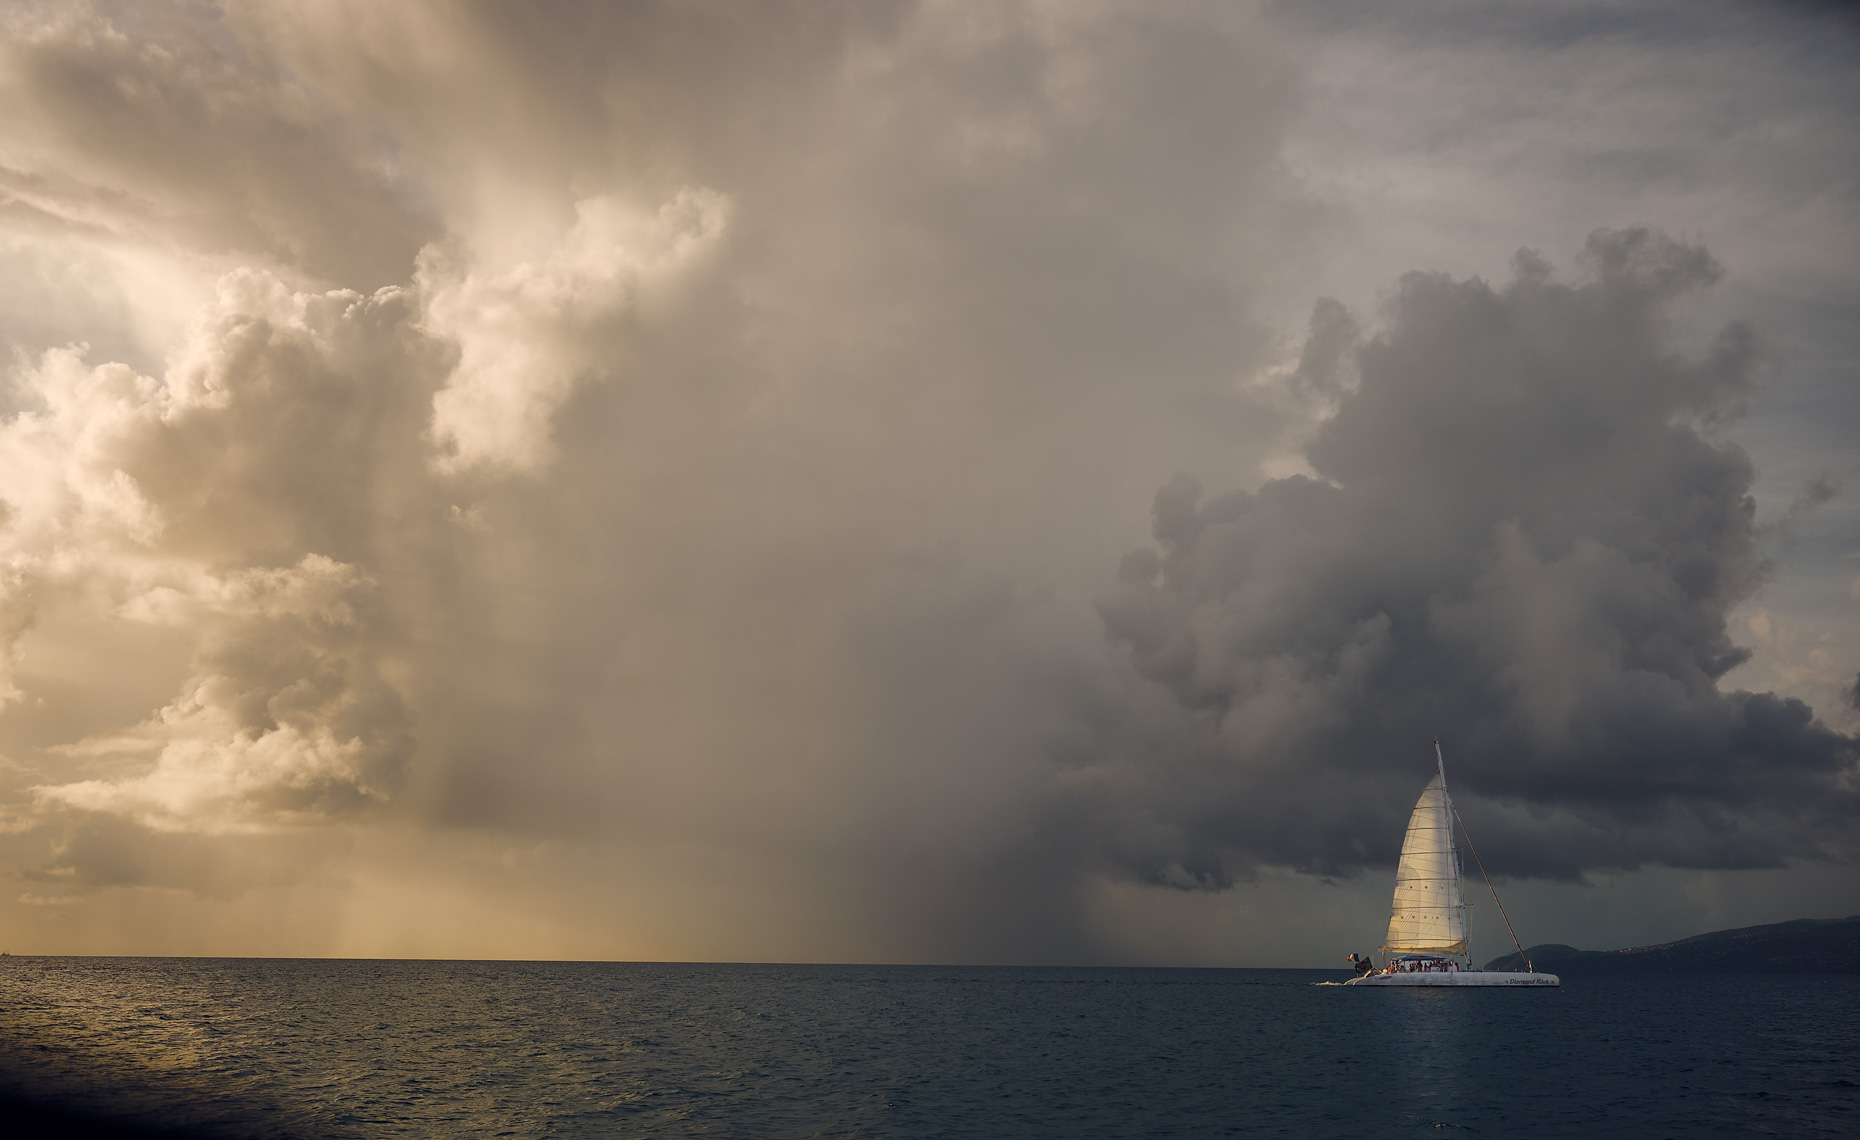 Sailing close to storm 